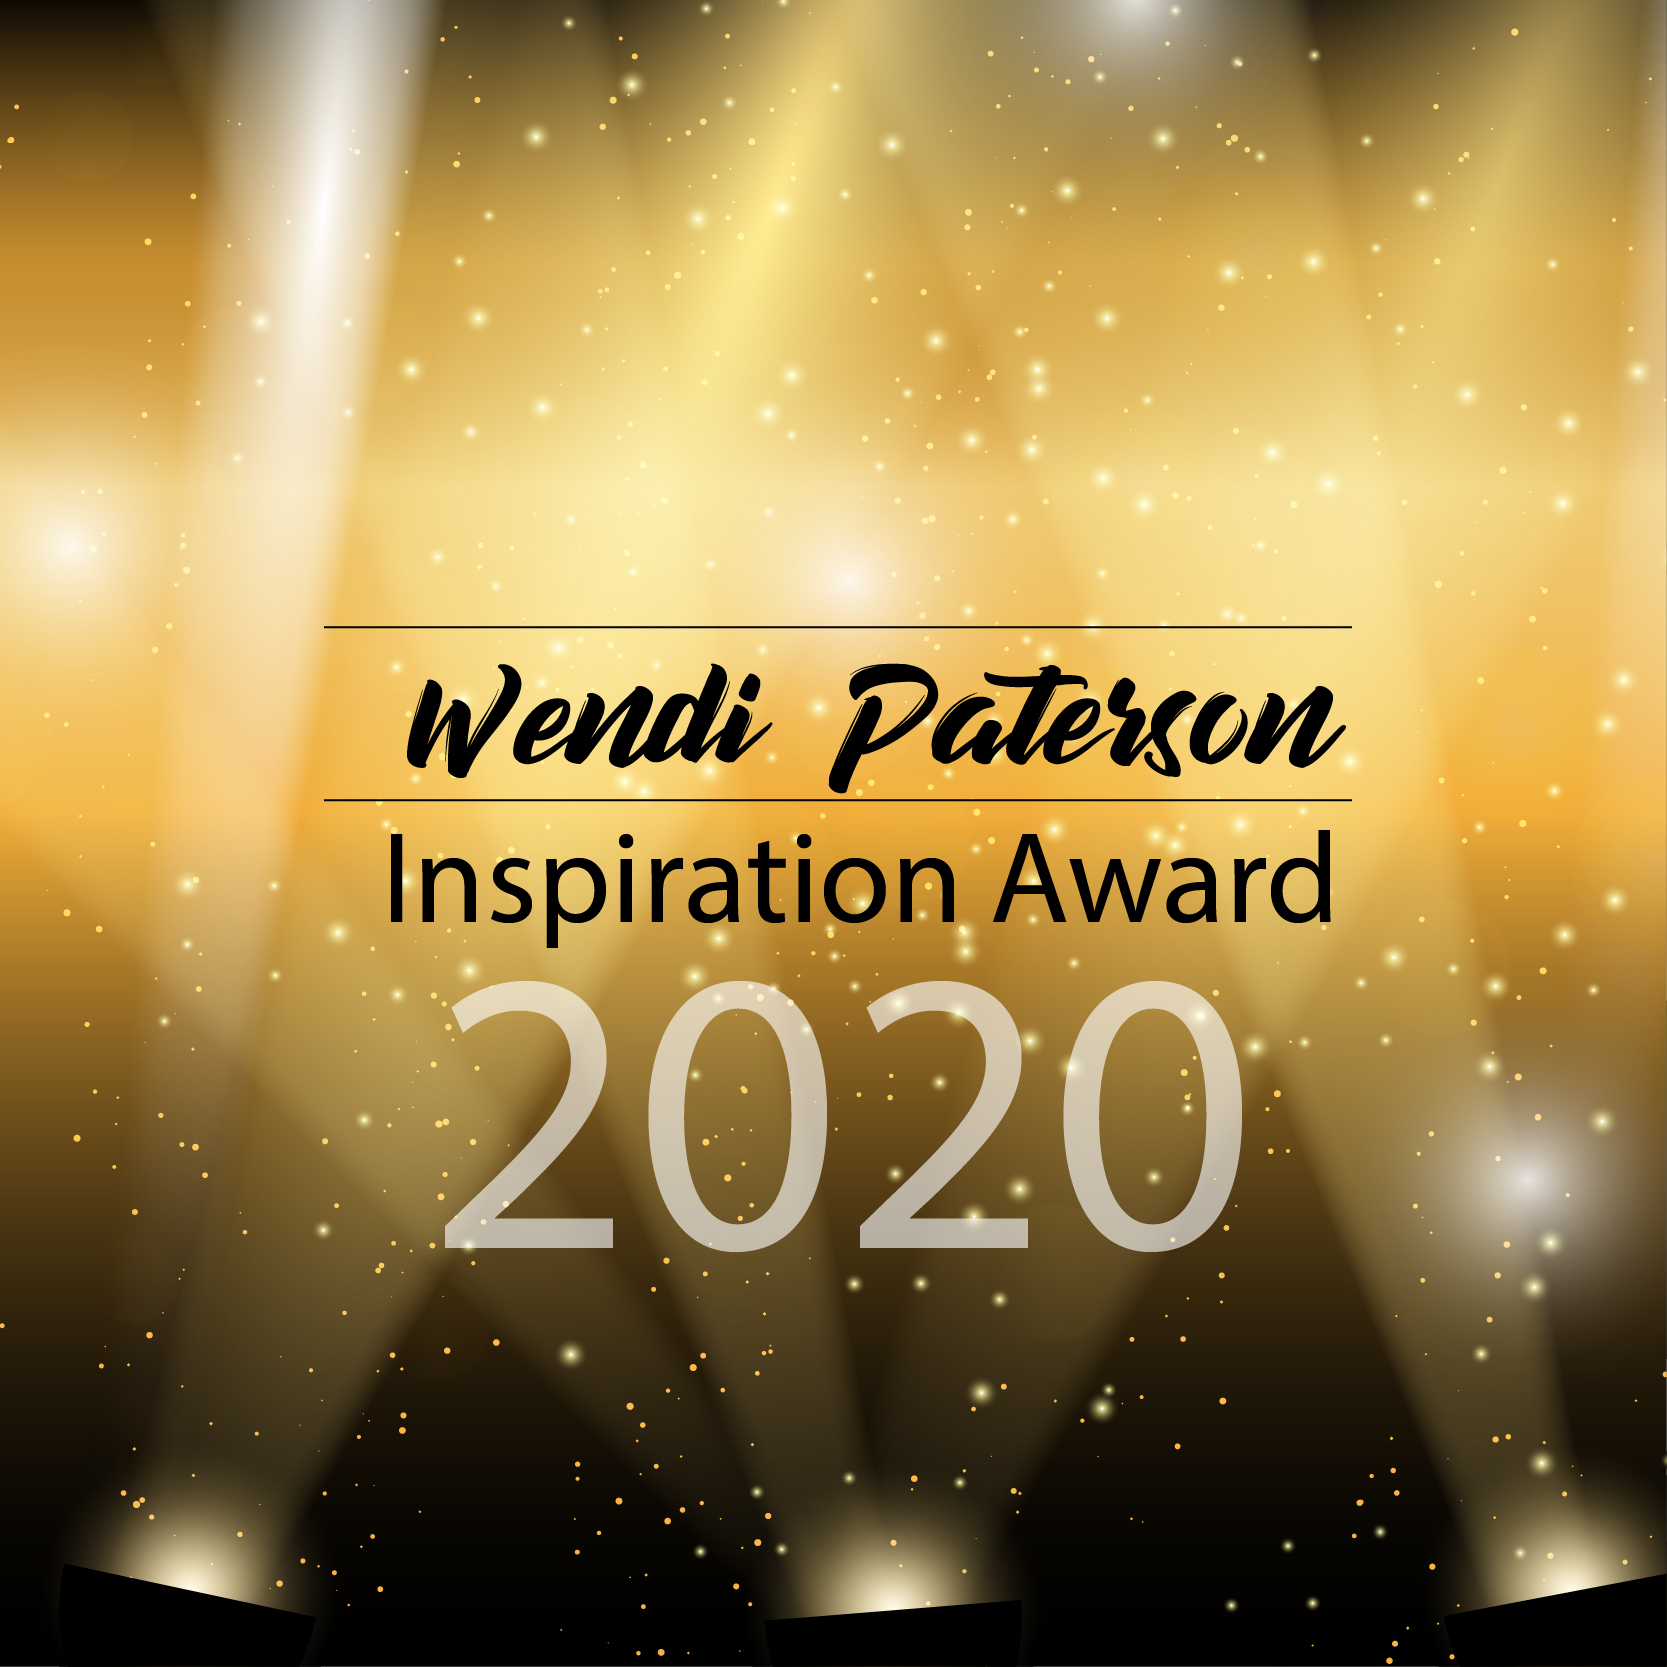 Wendi Paterson Inspiration Award – March 2020